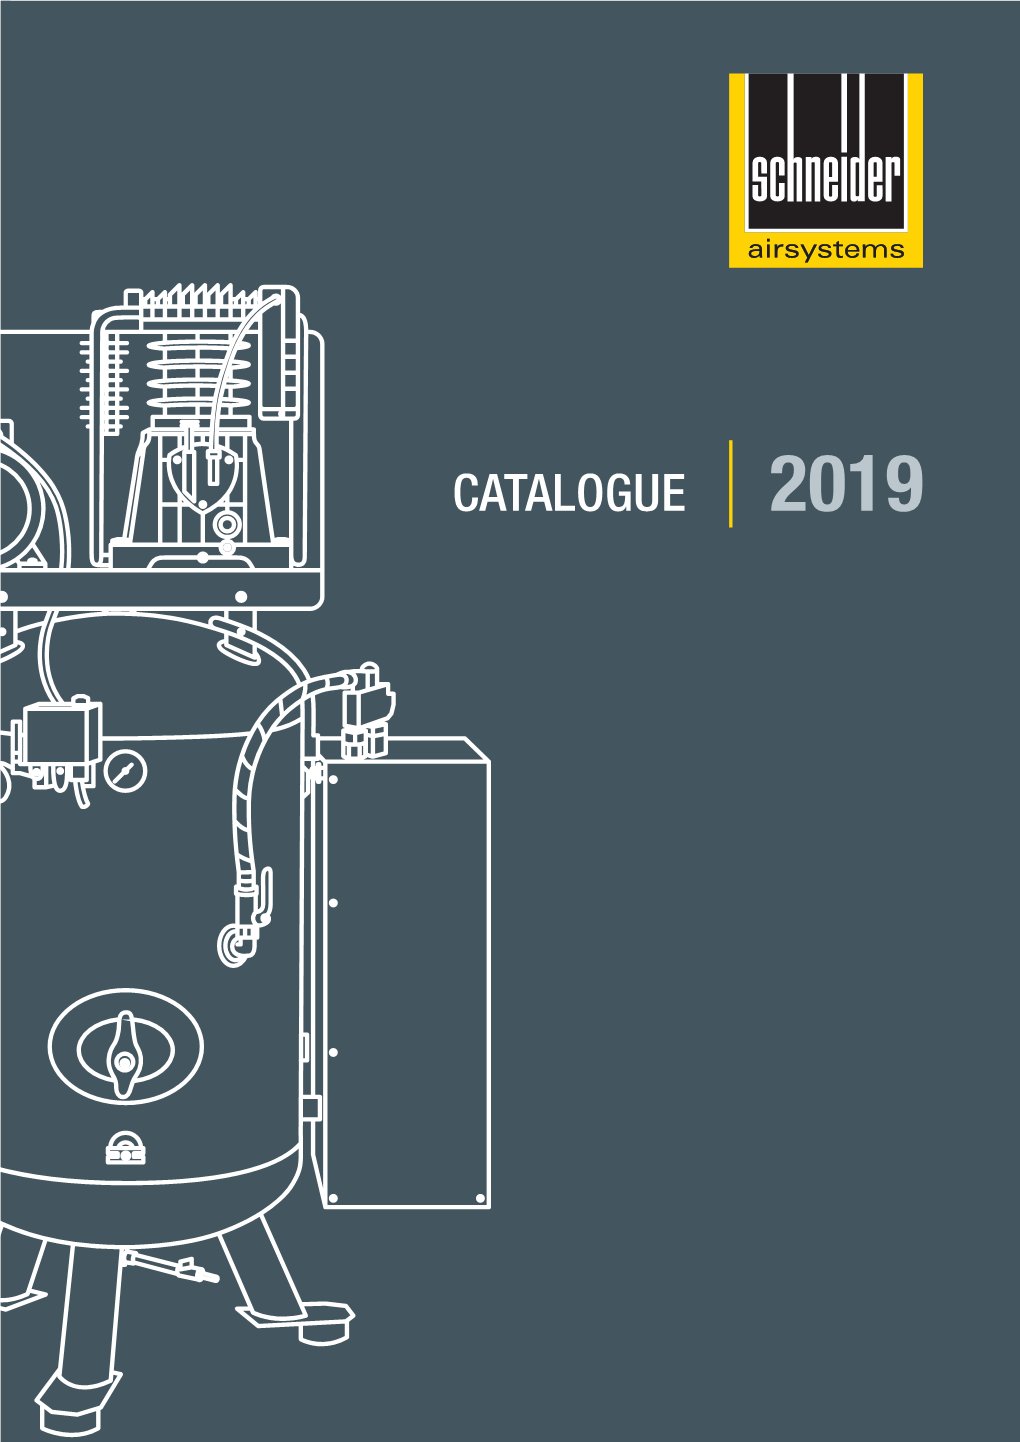 Catalogue 2019 Catalogue 2019 2